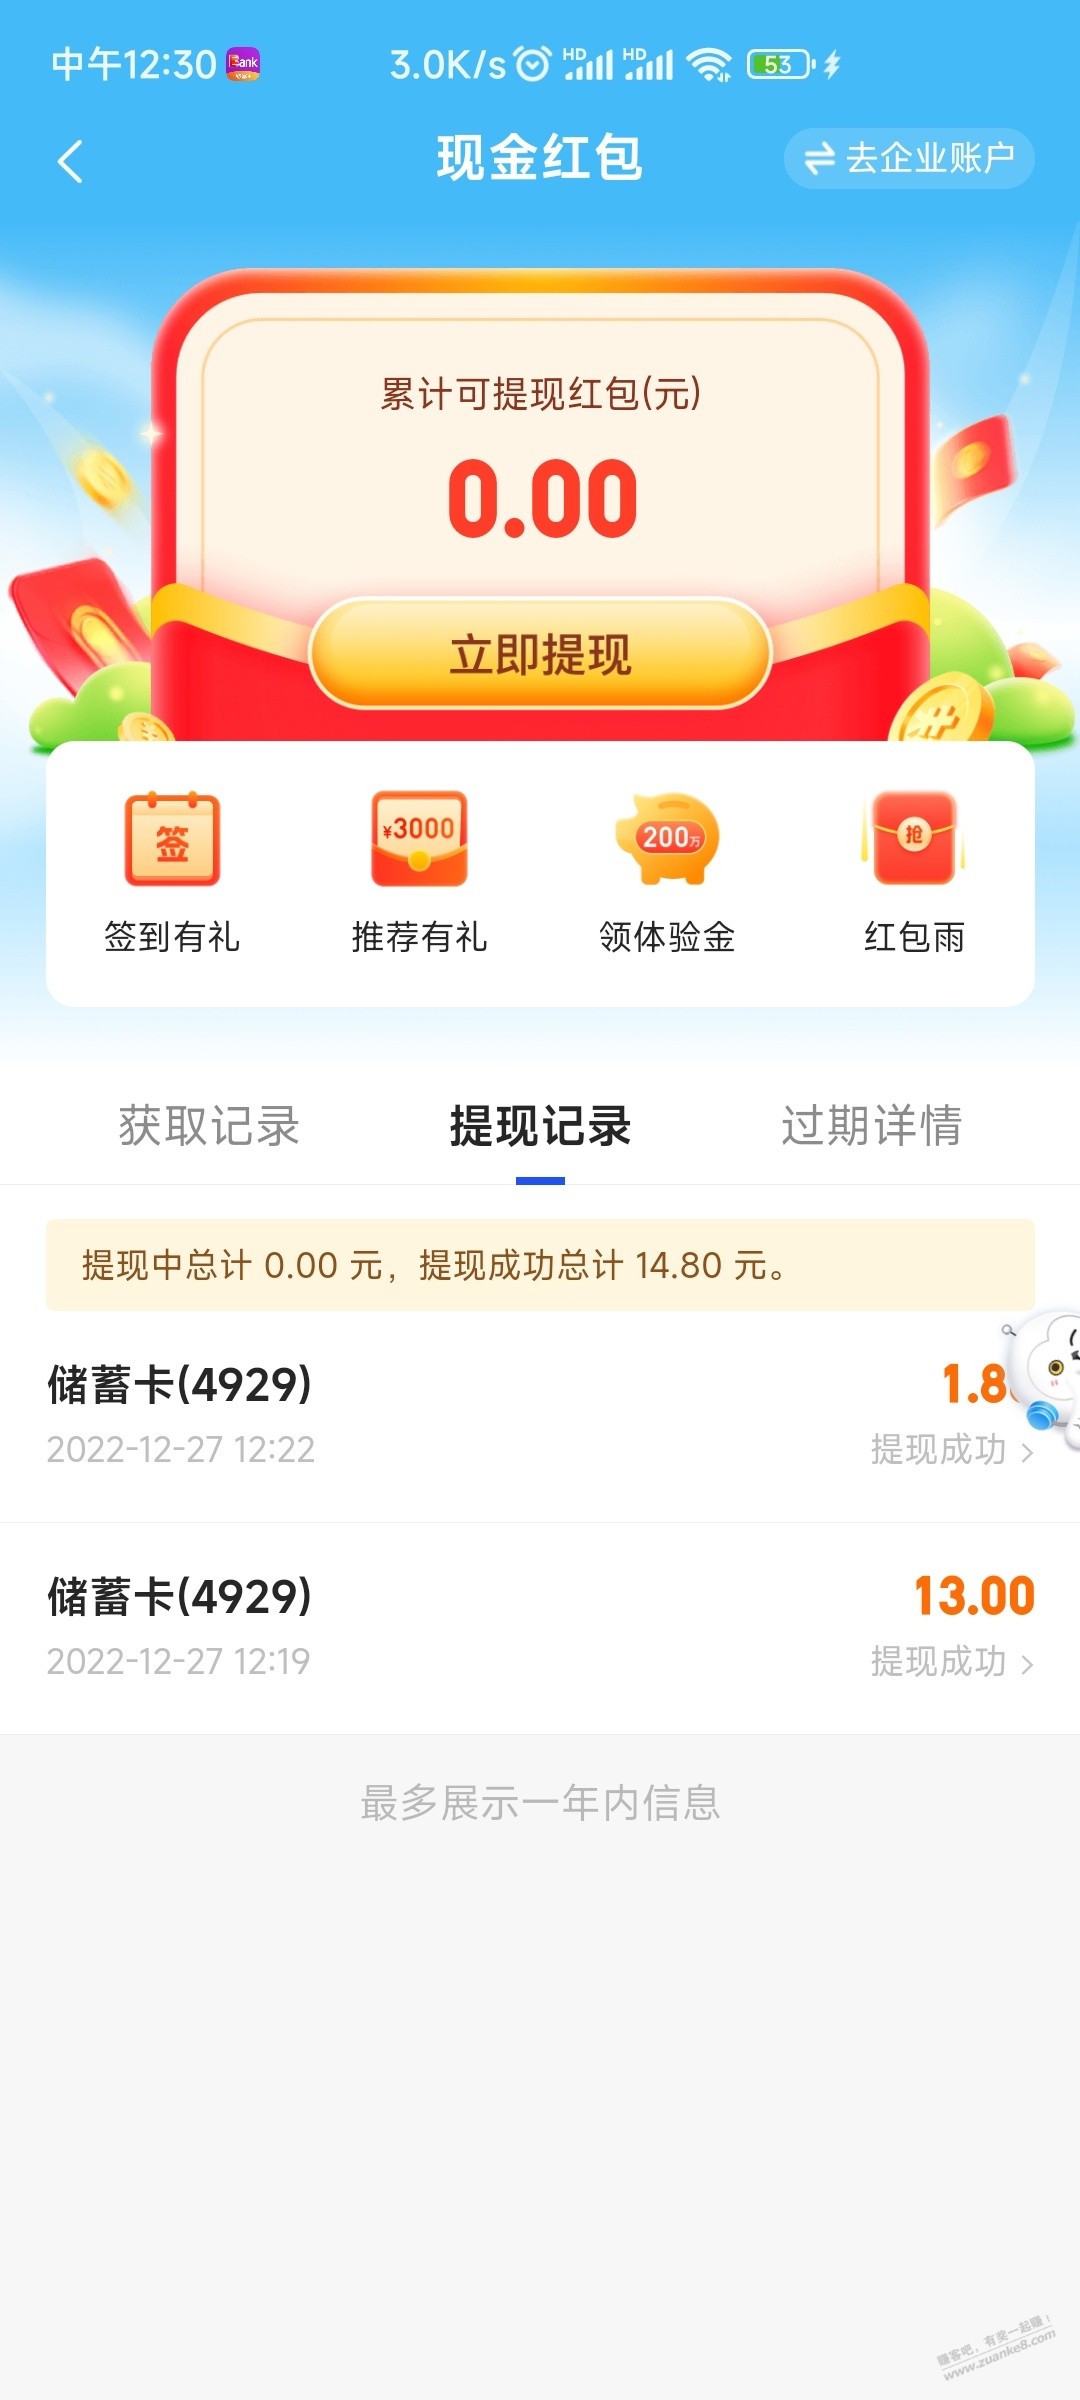 17.5现金红包-惠小助(52huixz.com)